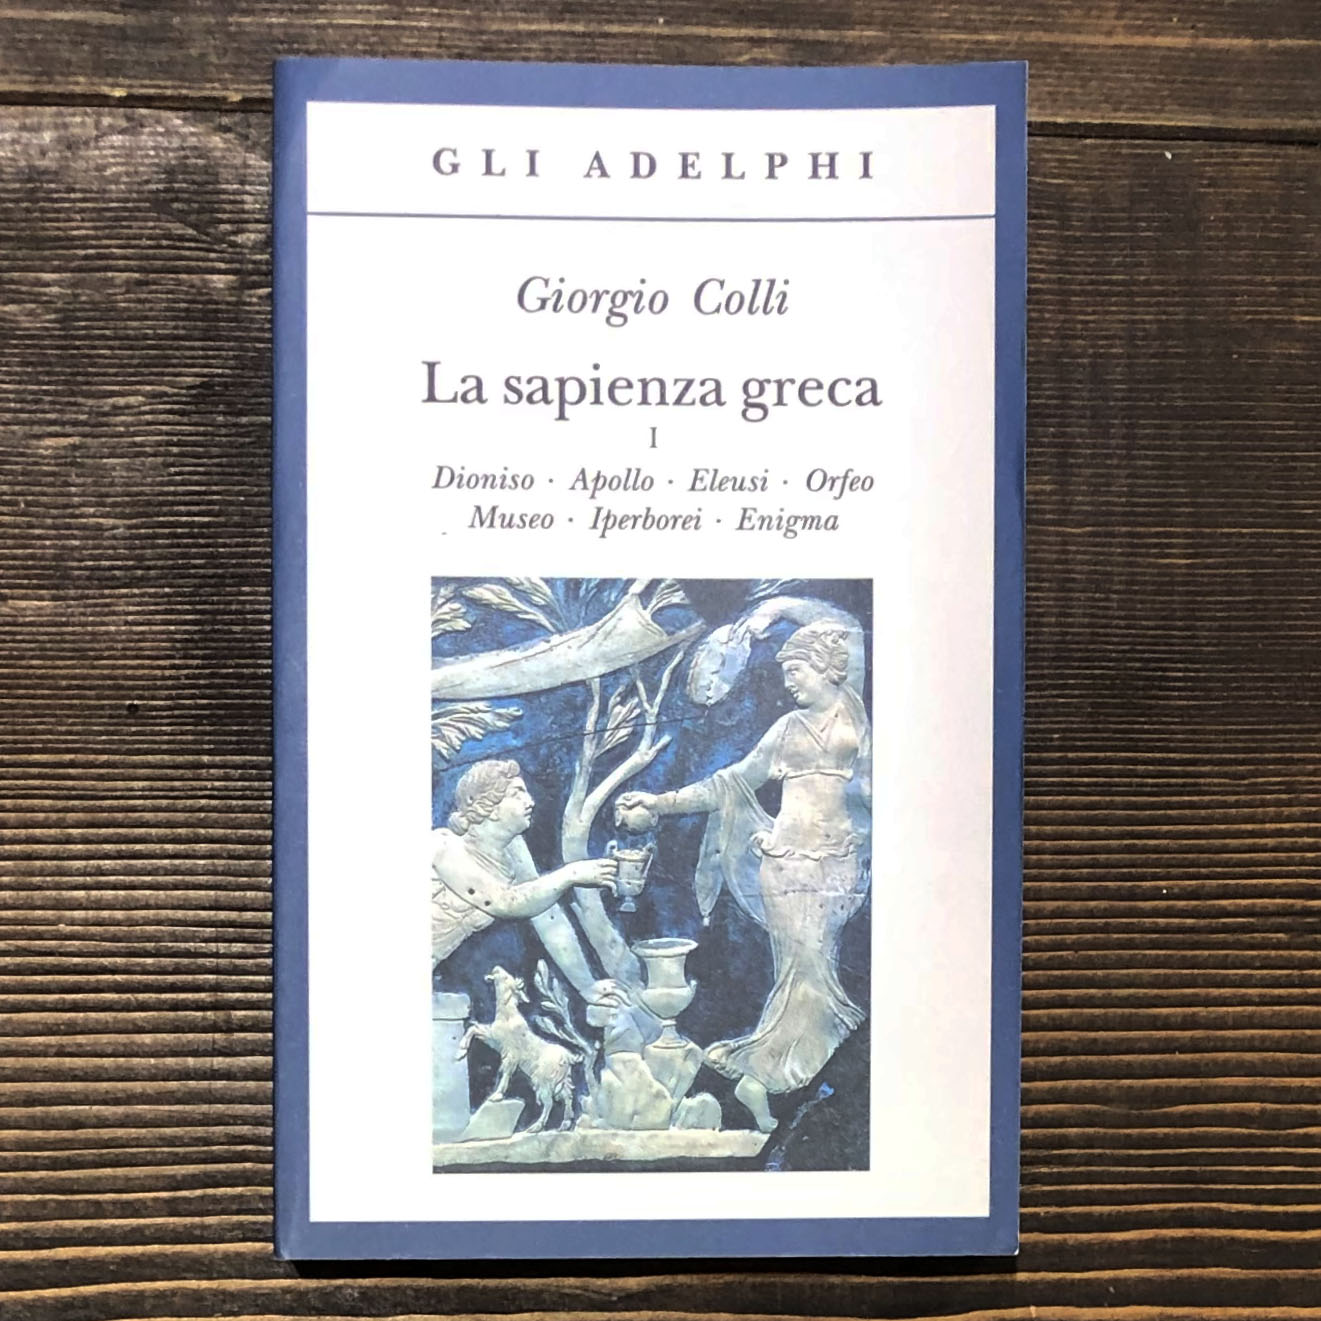 LA SAPIENZA GRECA. VOLUME I. DIONISO - APOLLO - ELEUSI - ORFEO - MUSEO - IPERBOREI - ENIGMA - GIORGIO COLLI